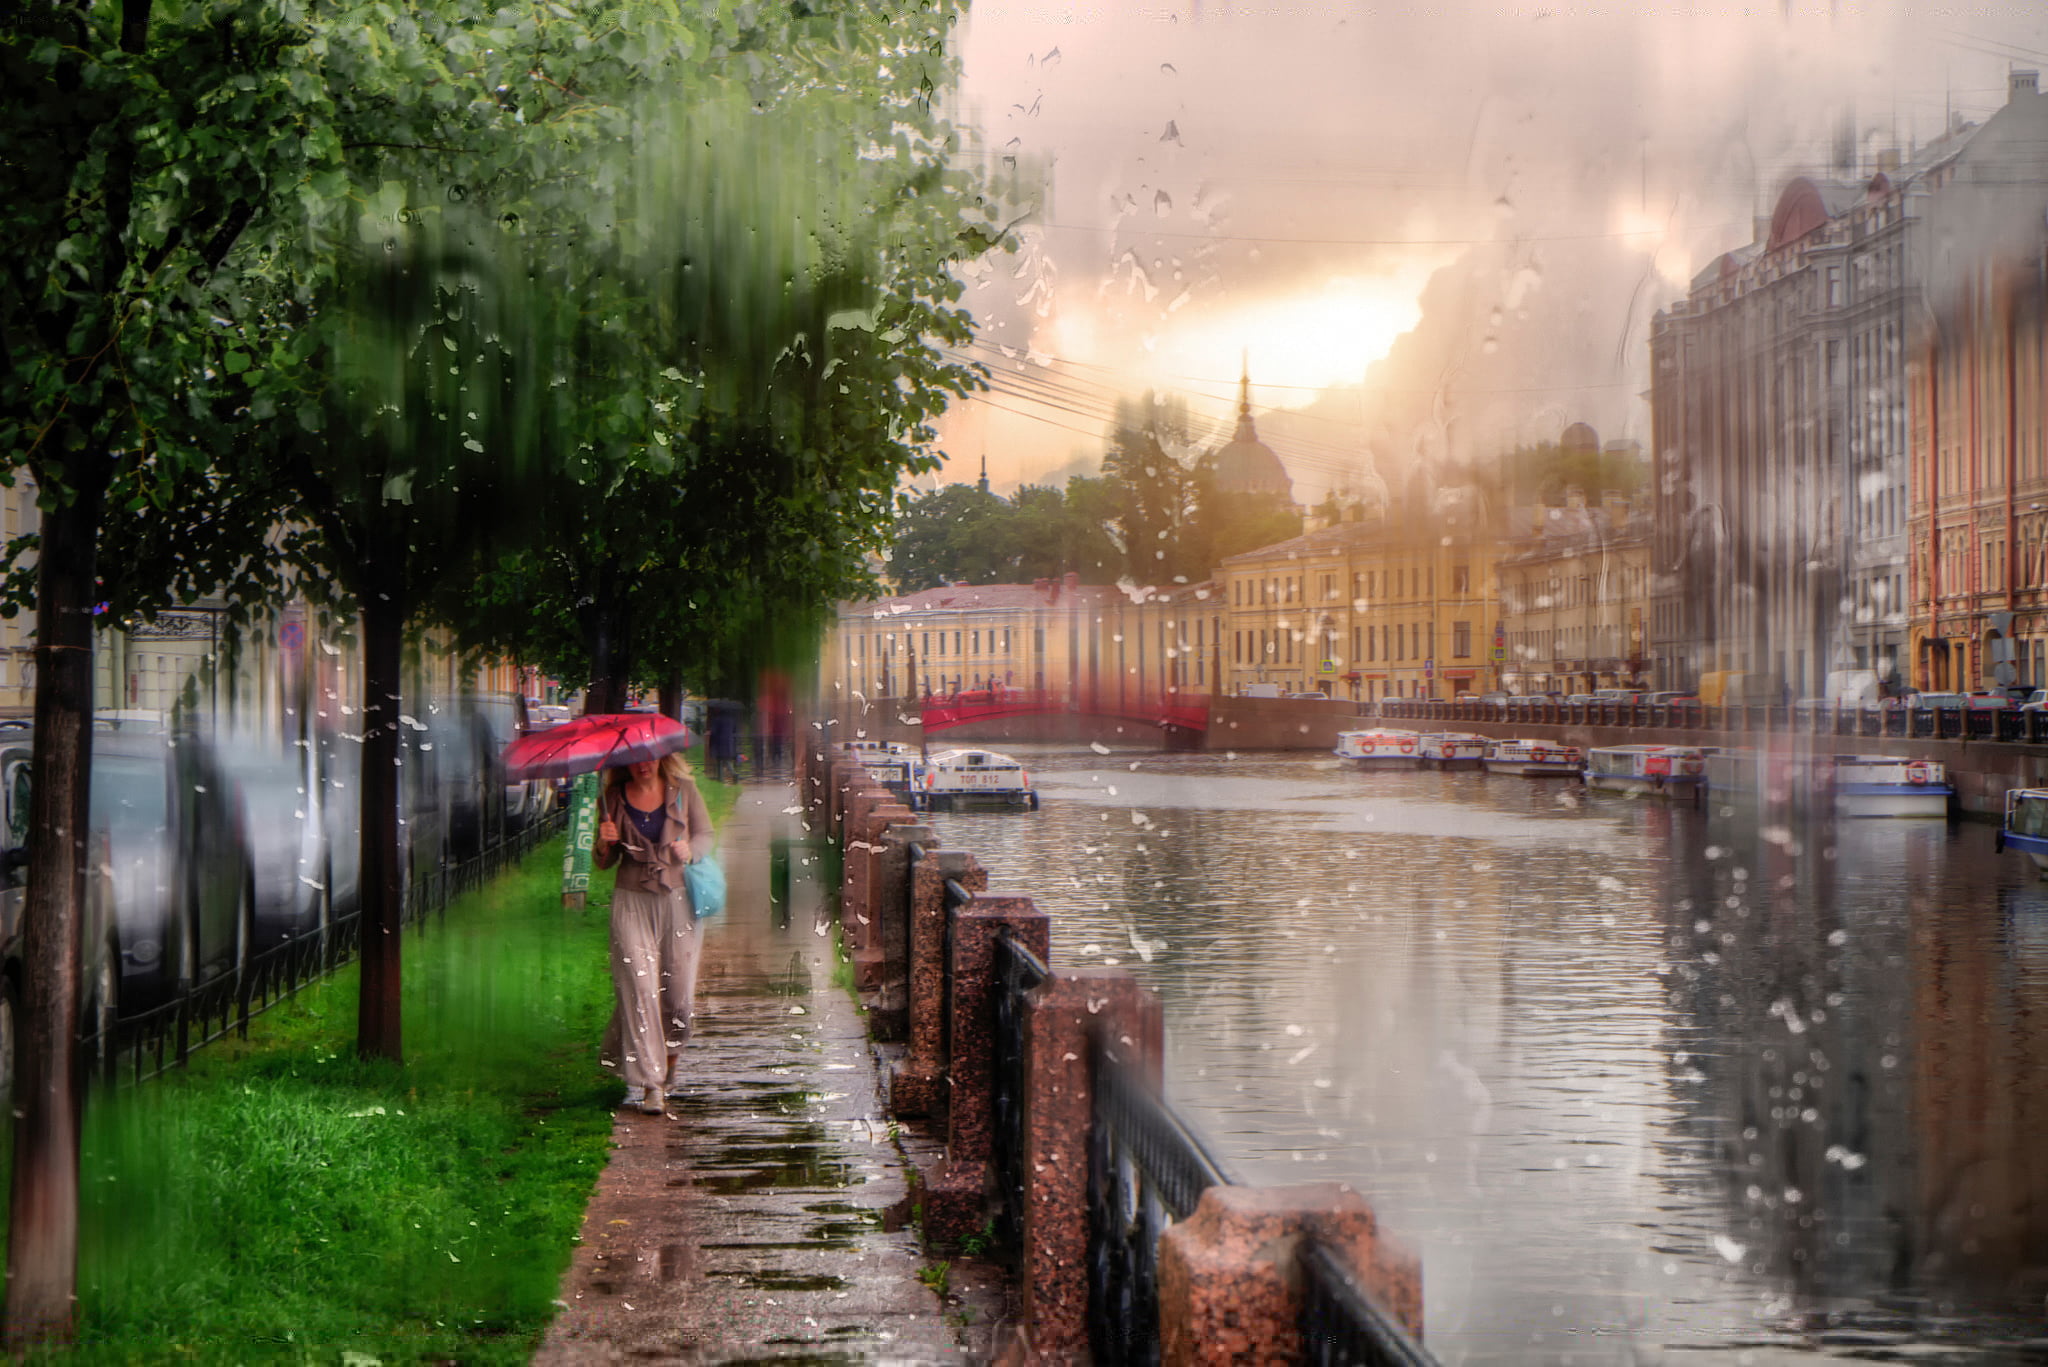 red umbrella, girl, drops, rain, Saint Petersburg, Russia, people